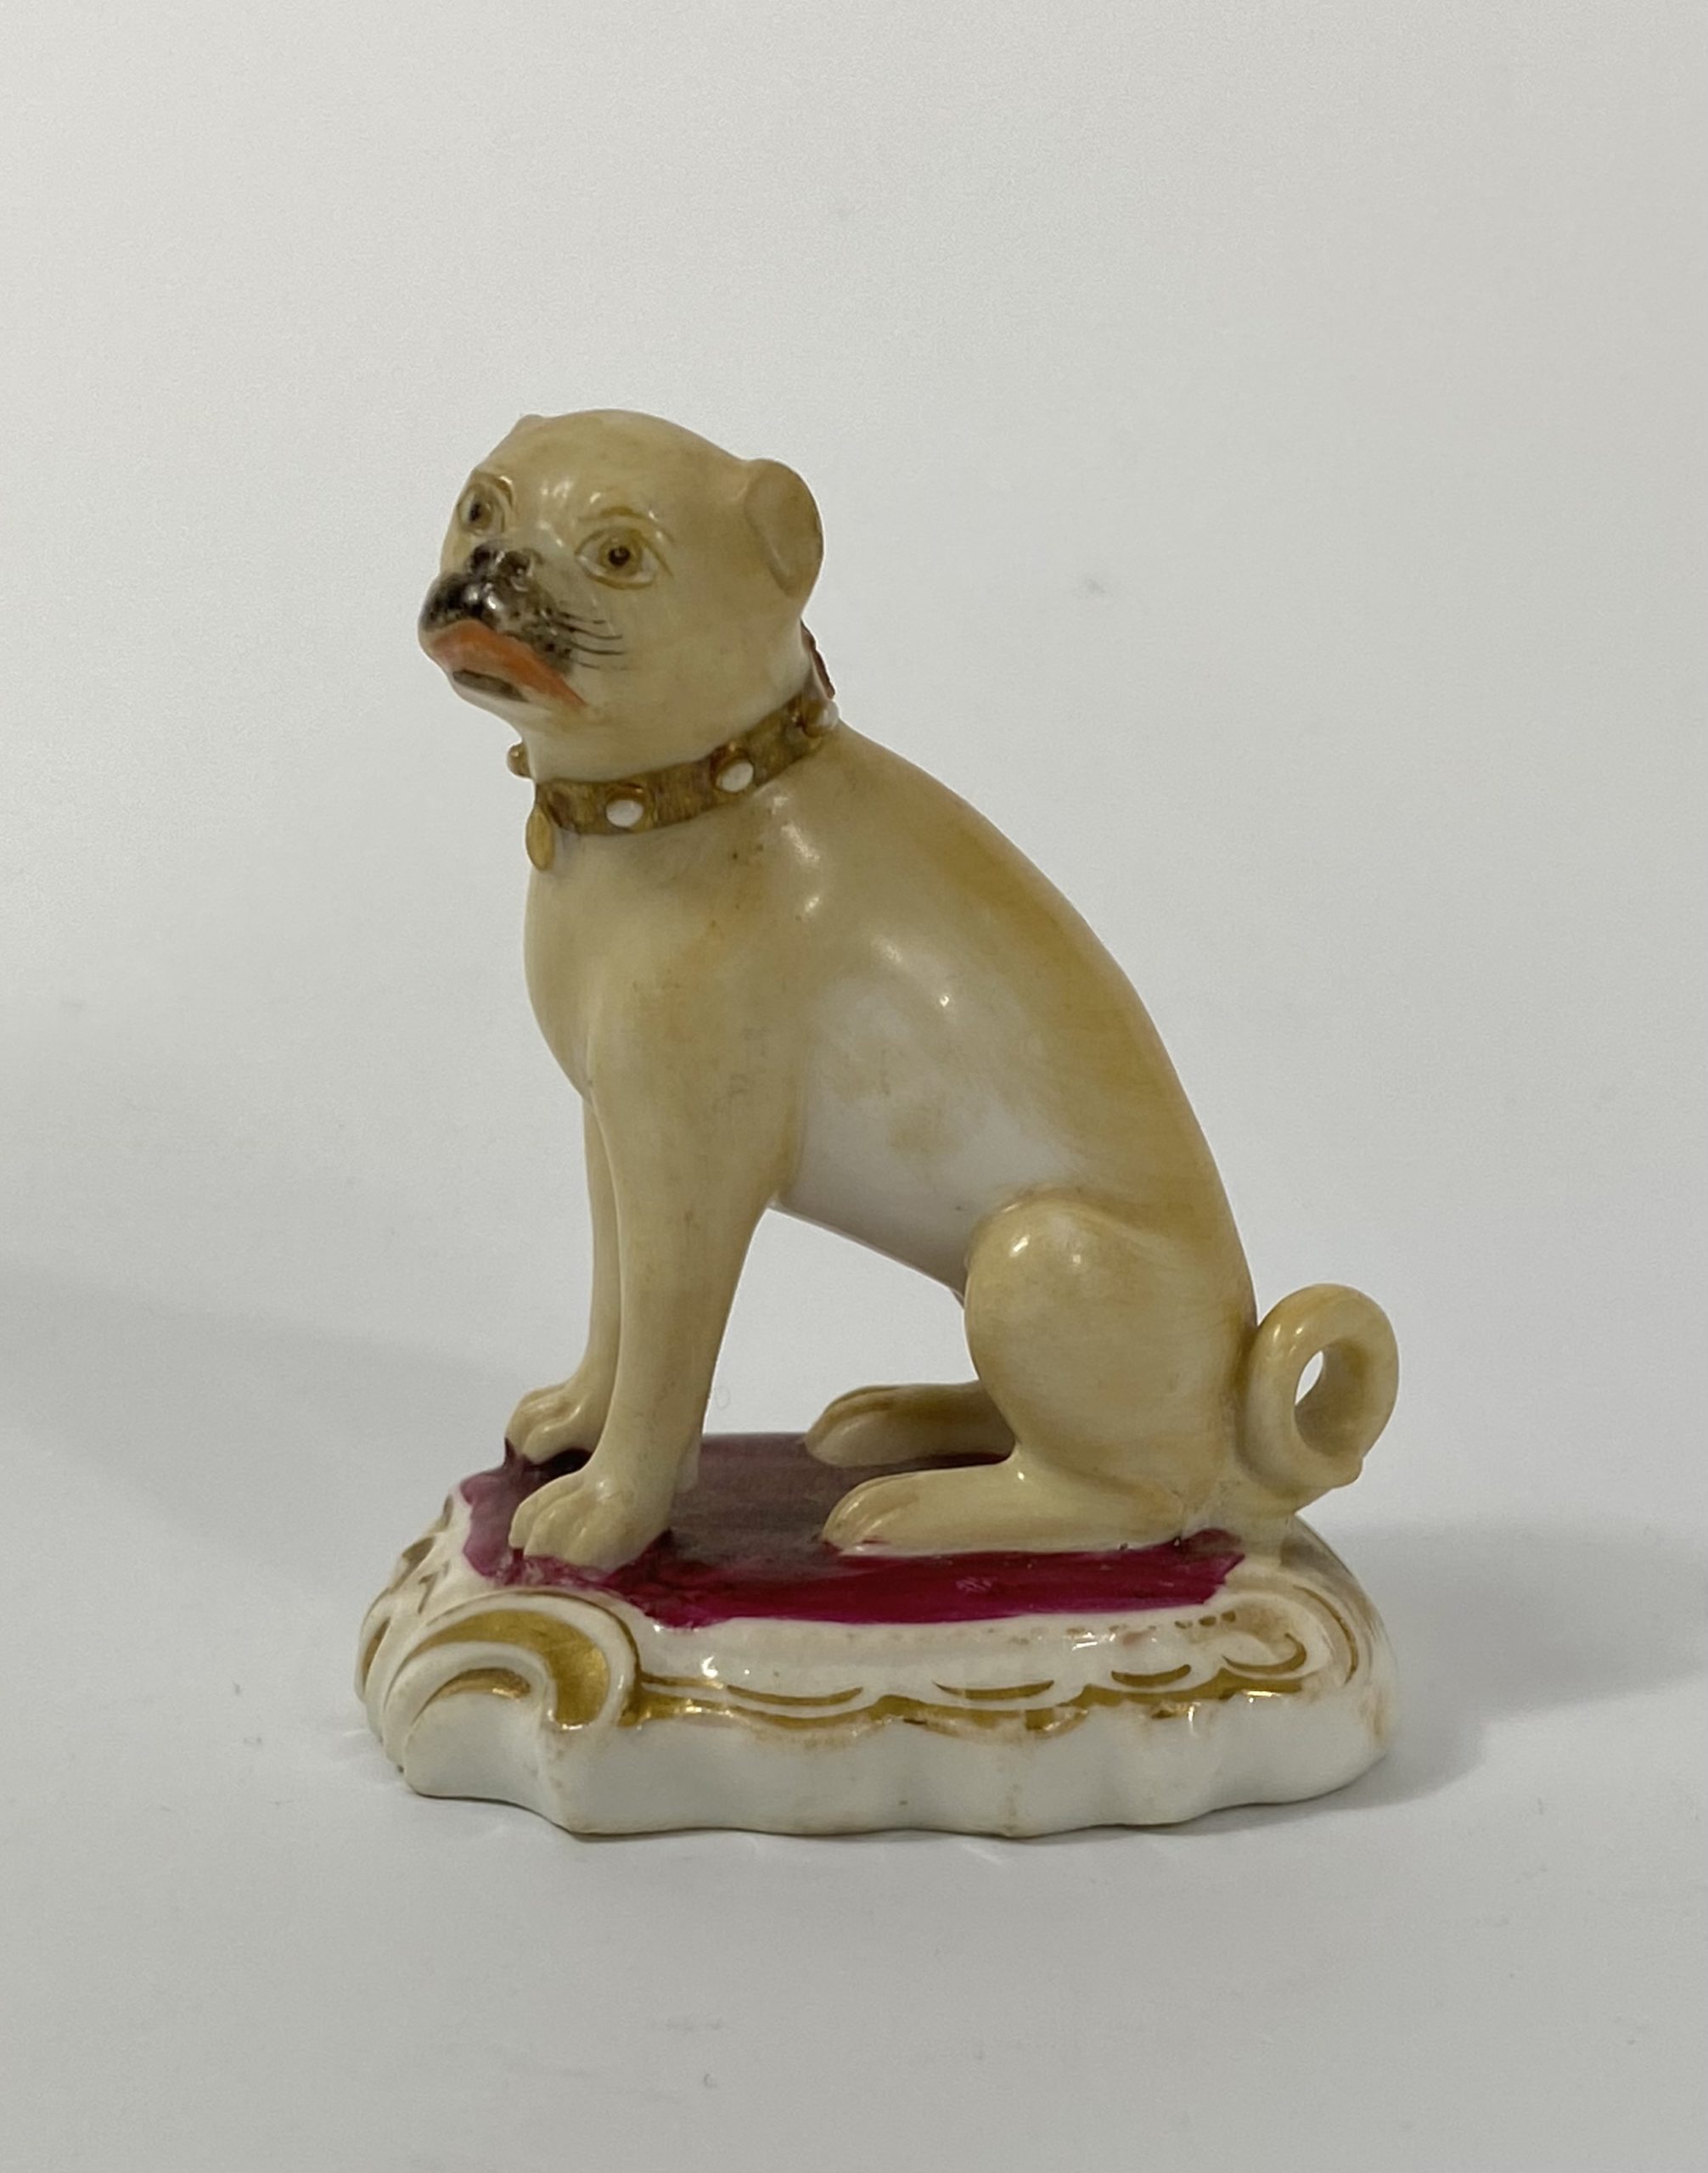 Rockingham porcelain pug dog, c. 1835